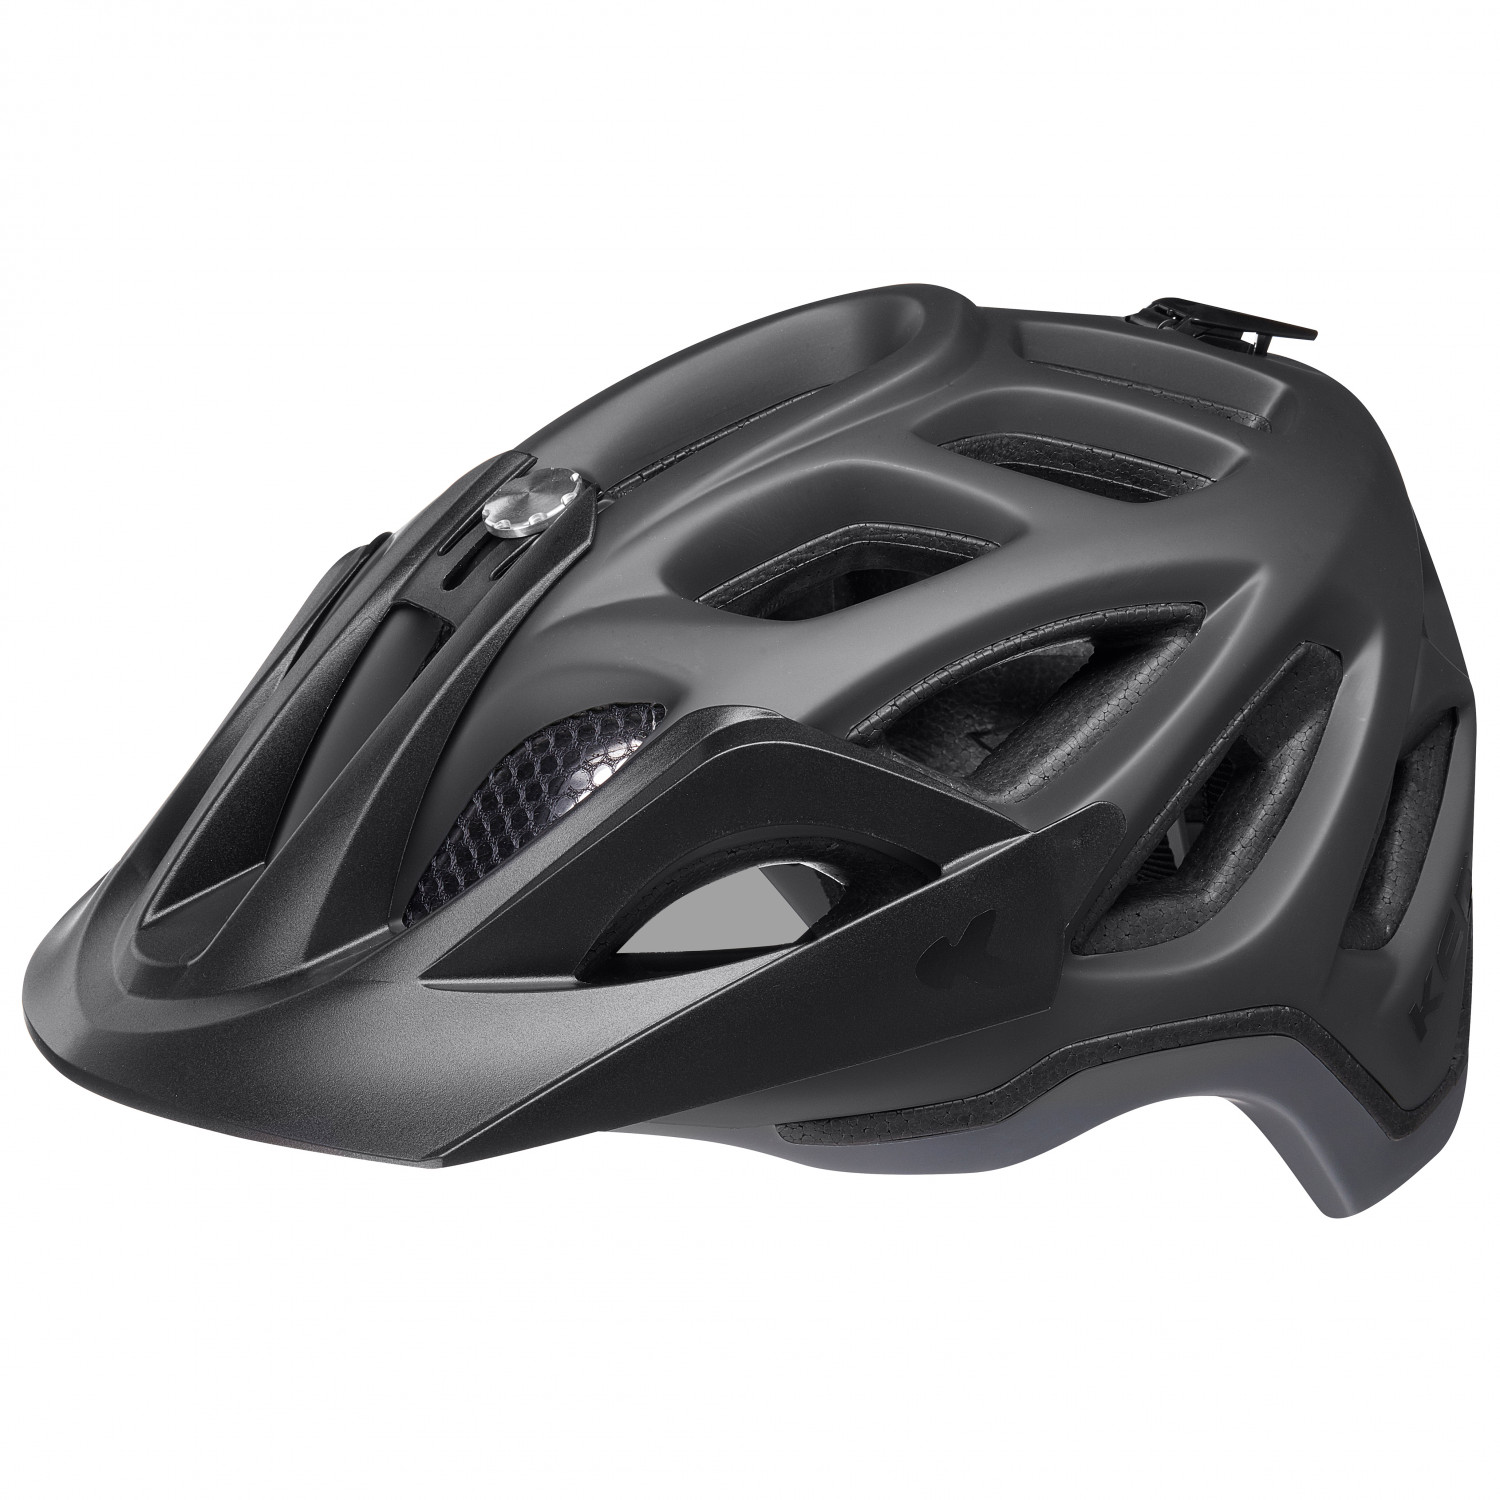 Велосипедный шлем Ked Trailon, цвет Process Black Matt